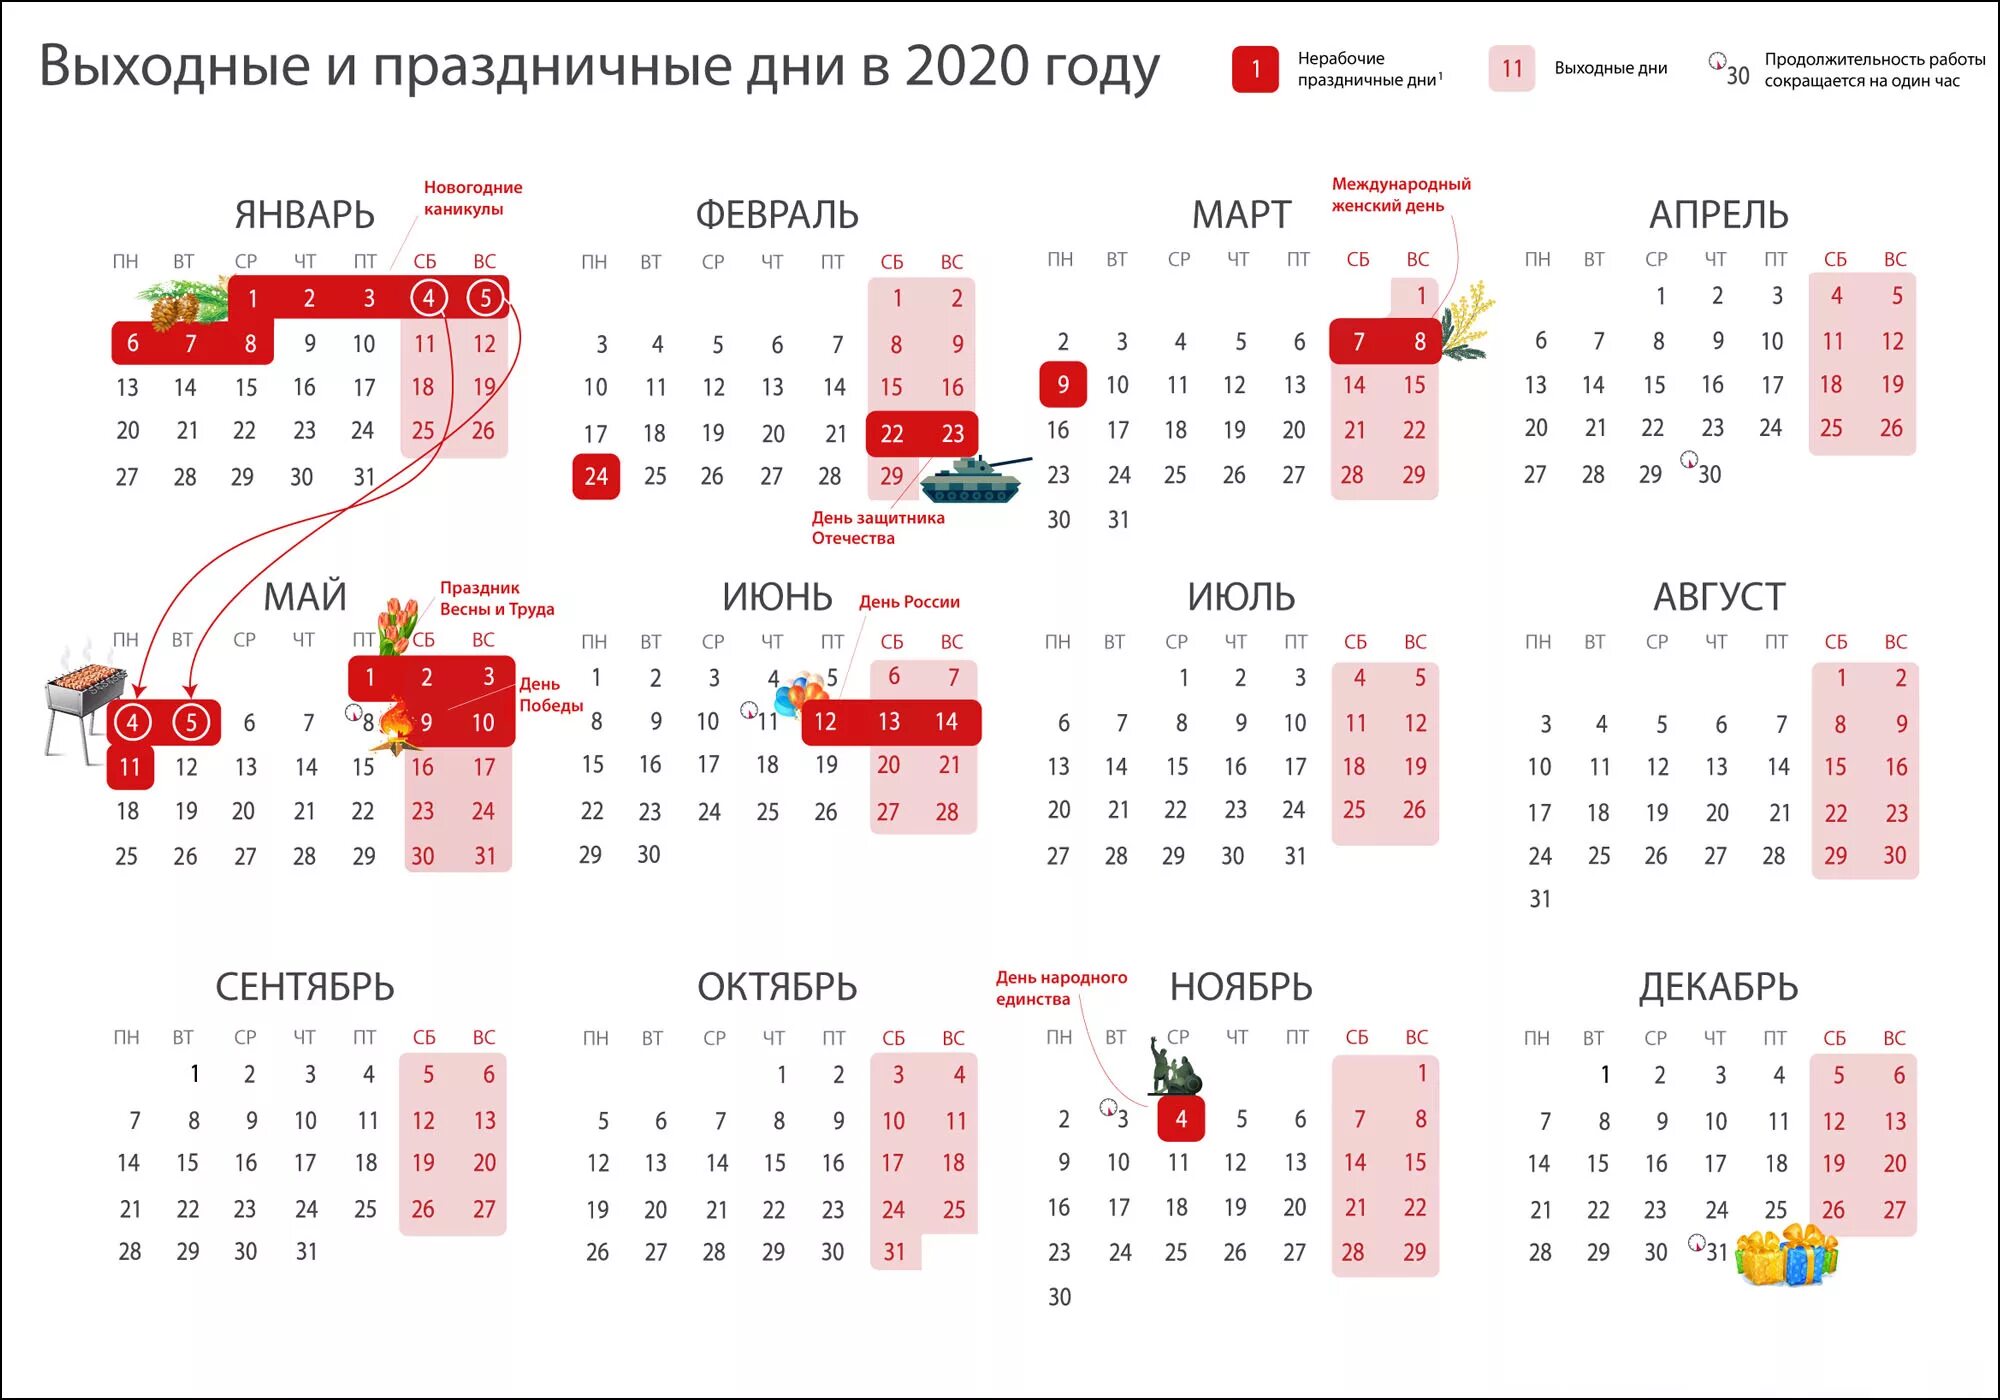 Праздники и выходные дни в 2020 году. Календарь рабочих дней 2020 год. Выходные и праздничные дни в 2020 году в России календарь. Календарь 2020 года производственный праздничными днями и выходными. Апрель рабочие дни производственный календарь